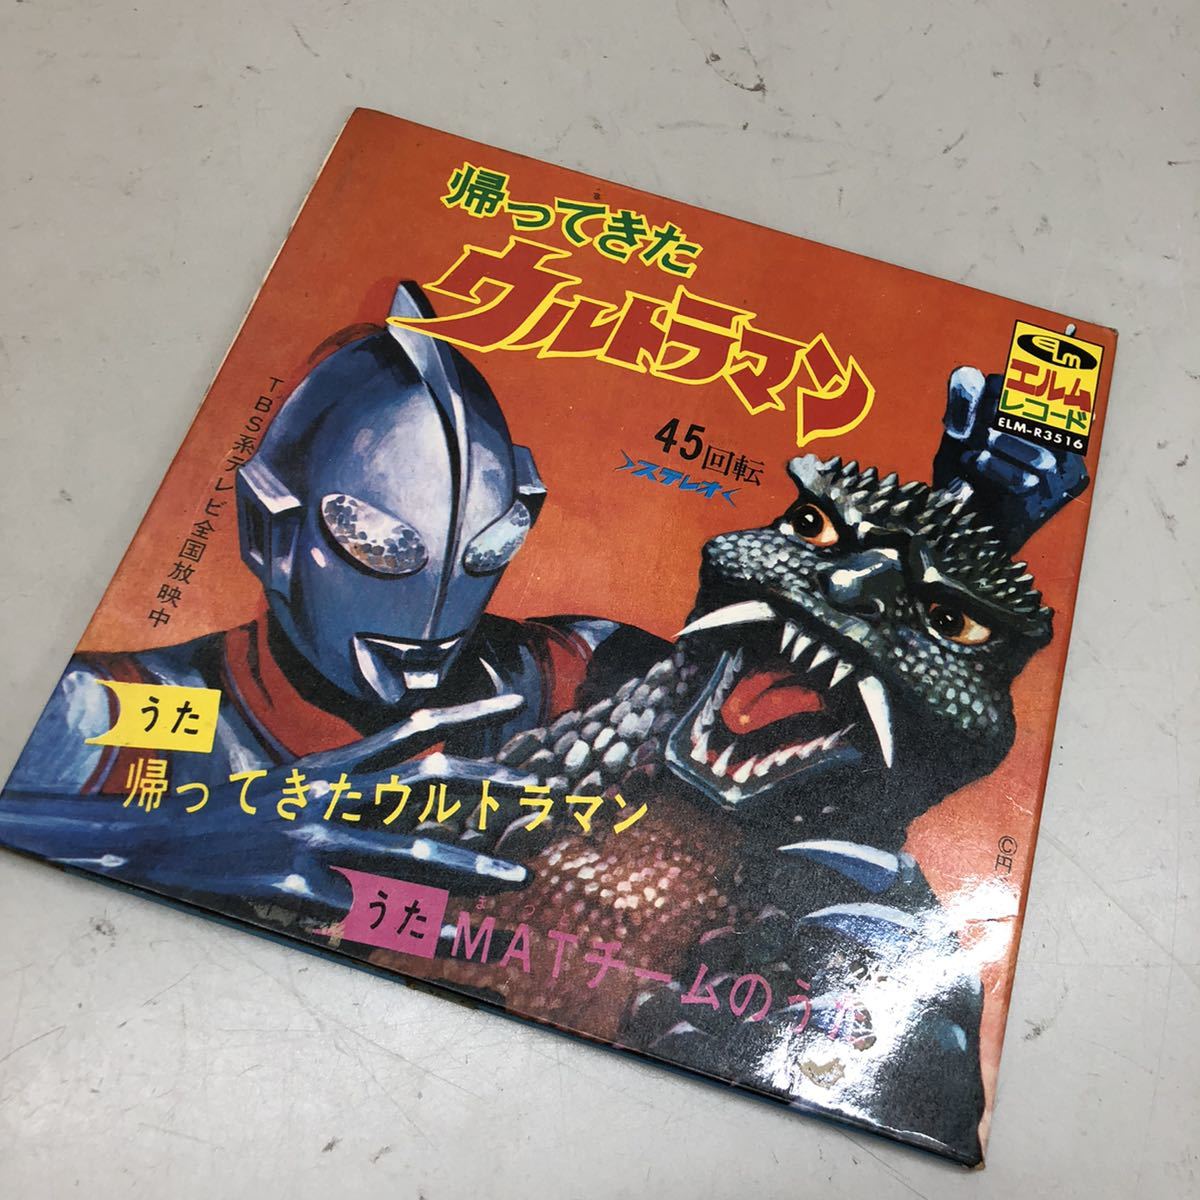  Return of Ultraman серебряный маска Rainbow man и т.п. Showa аниме retro L m запись книга@ совместно работоспособность не проверялась утиль 